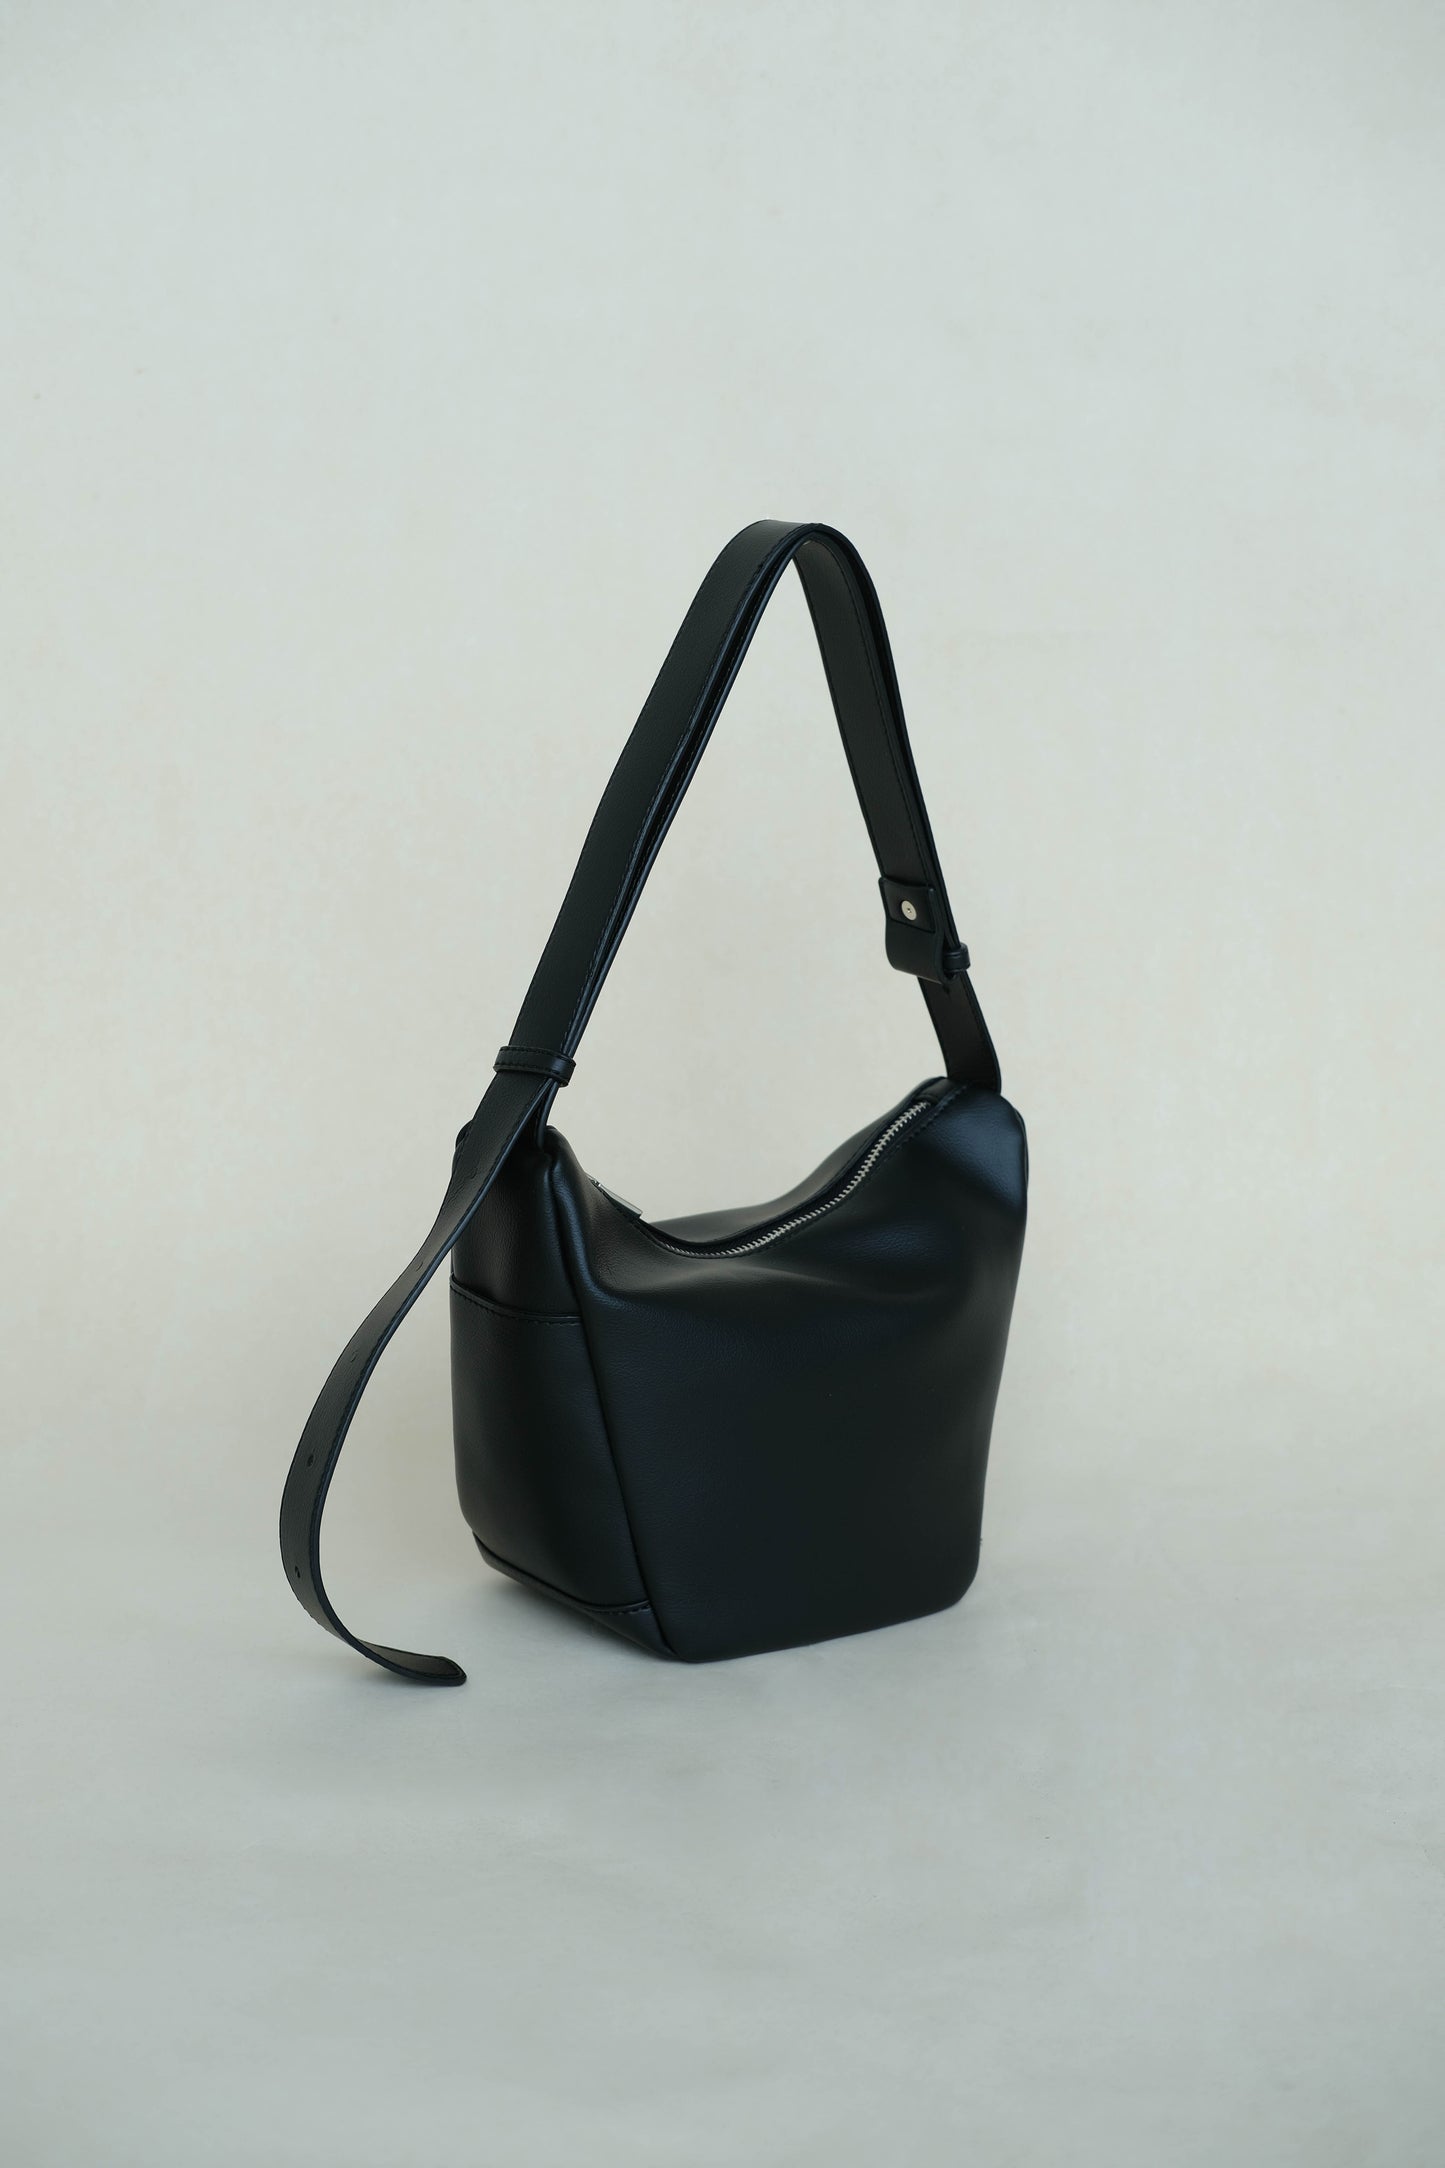 Supple leather axilla single-strap bag in classic black